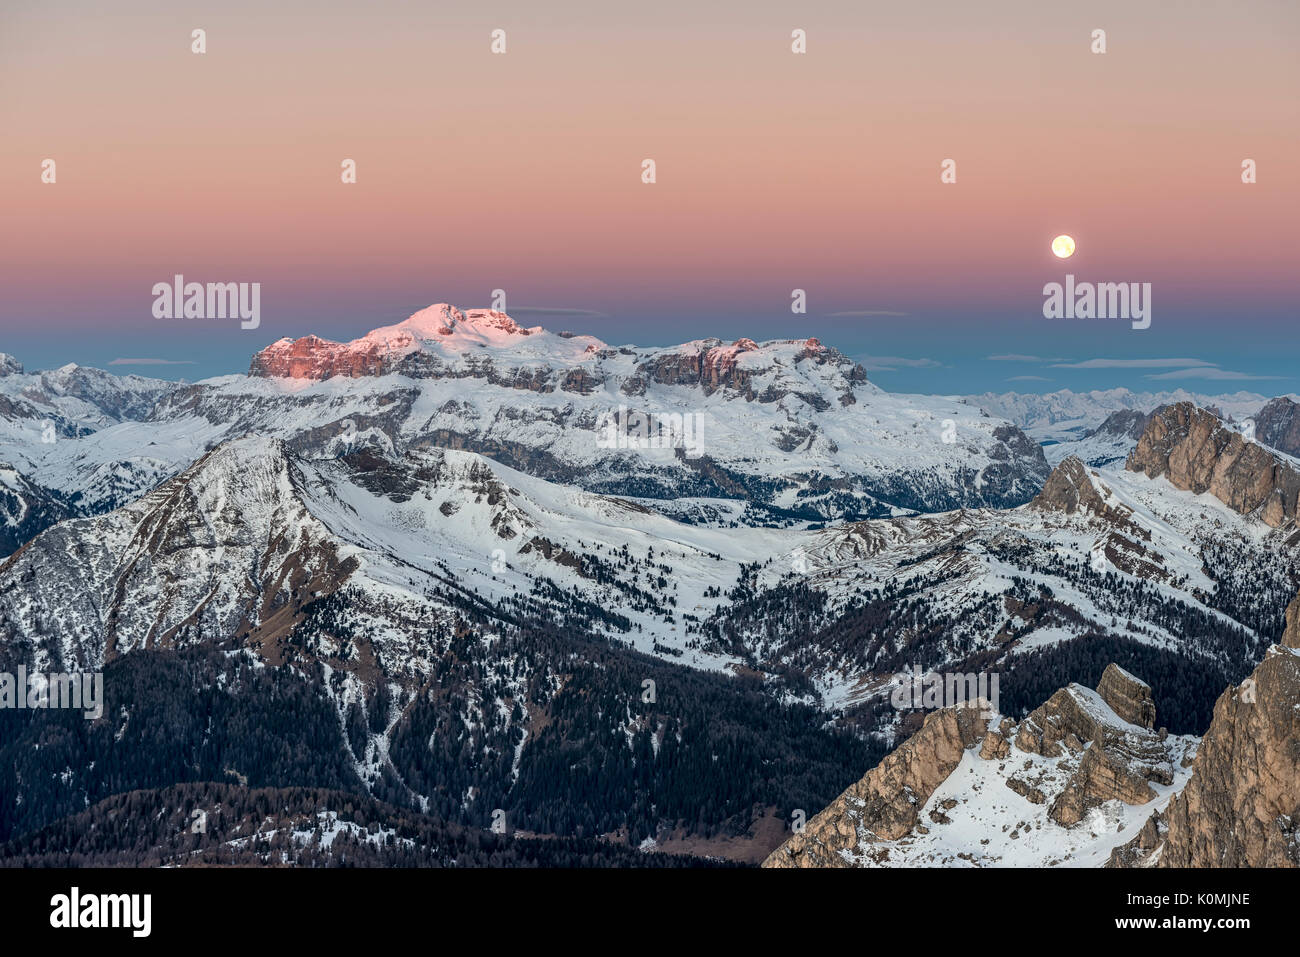 Nuvolau, Dolomiti, Veneto, Italia. Tramonto e luna piena nelle Dolomiti con le cime del Monte Sella group Foto Stock